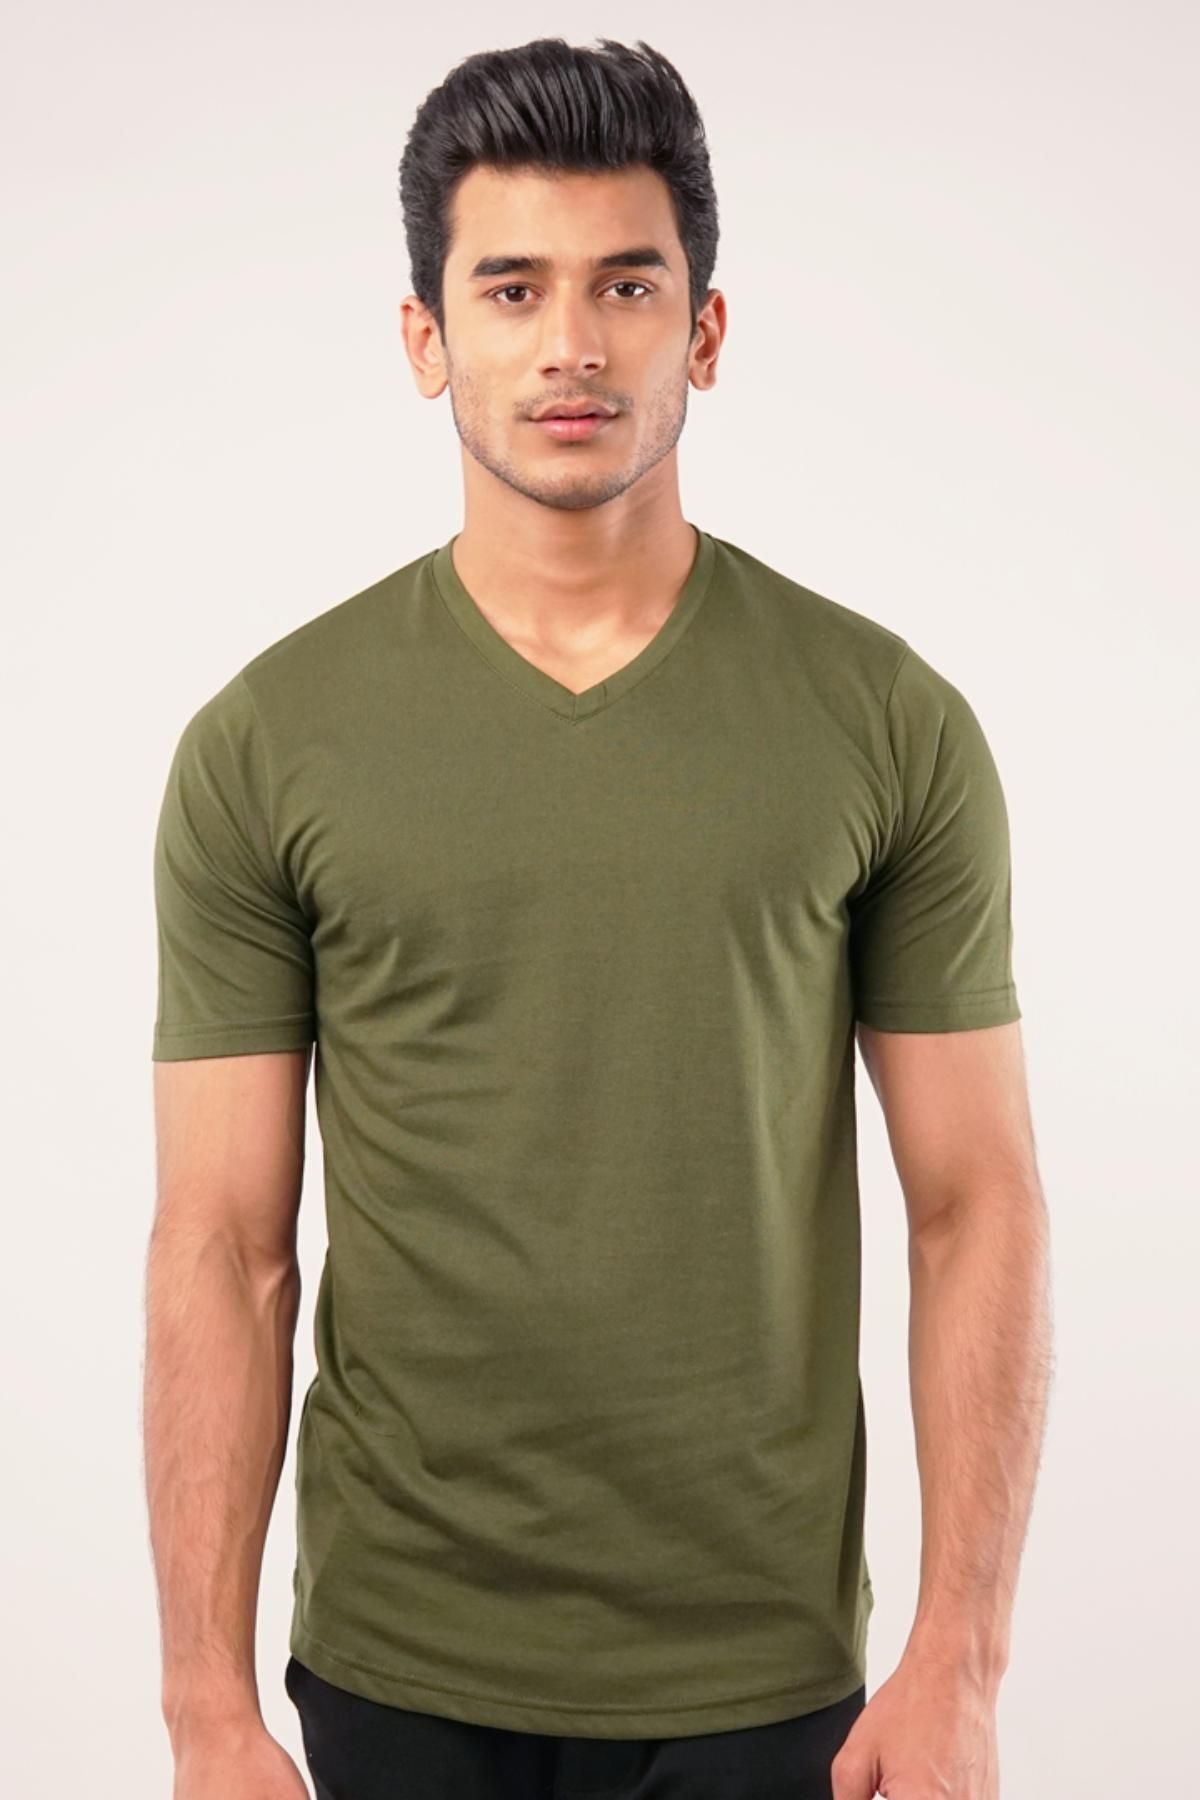 MENDEEZ Opal V-Neck T-Shirt - Olive Green Olive Green Men T-Shirts